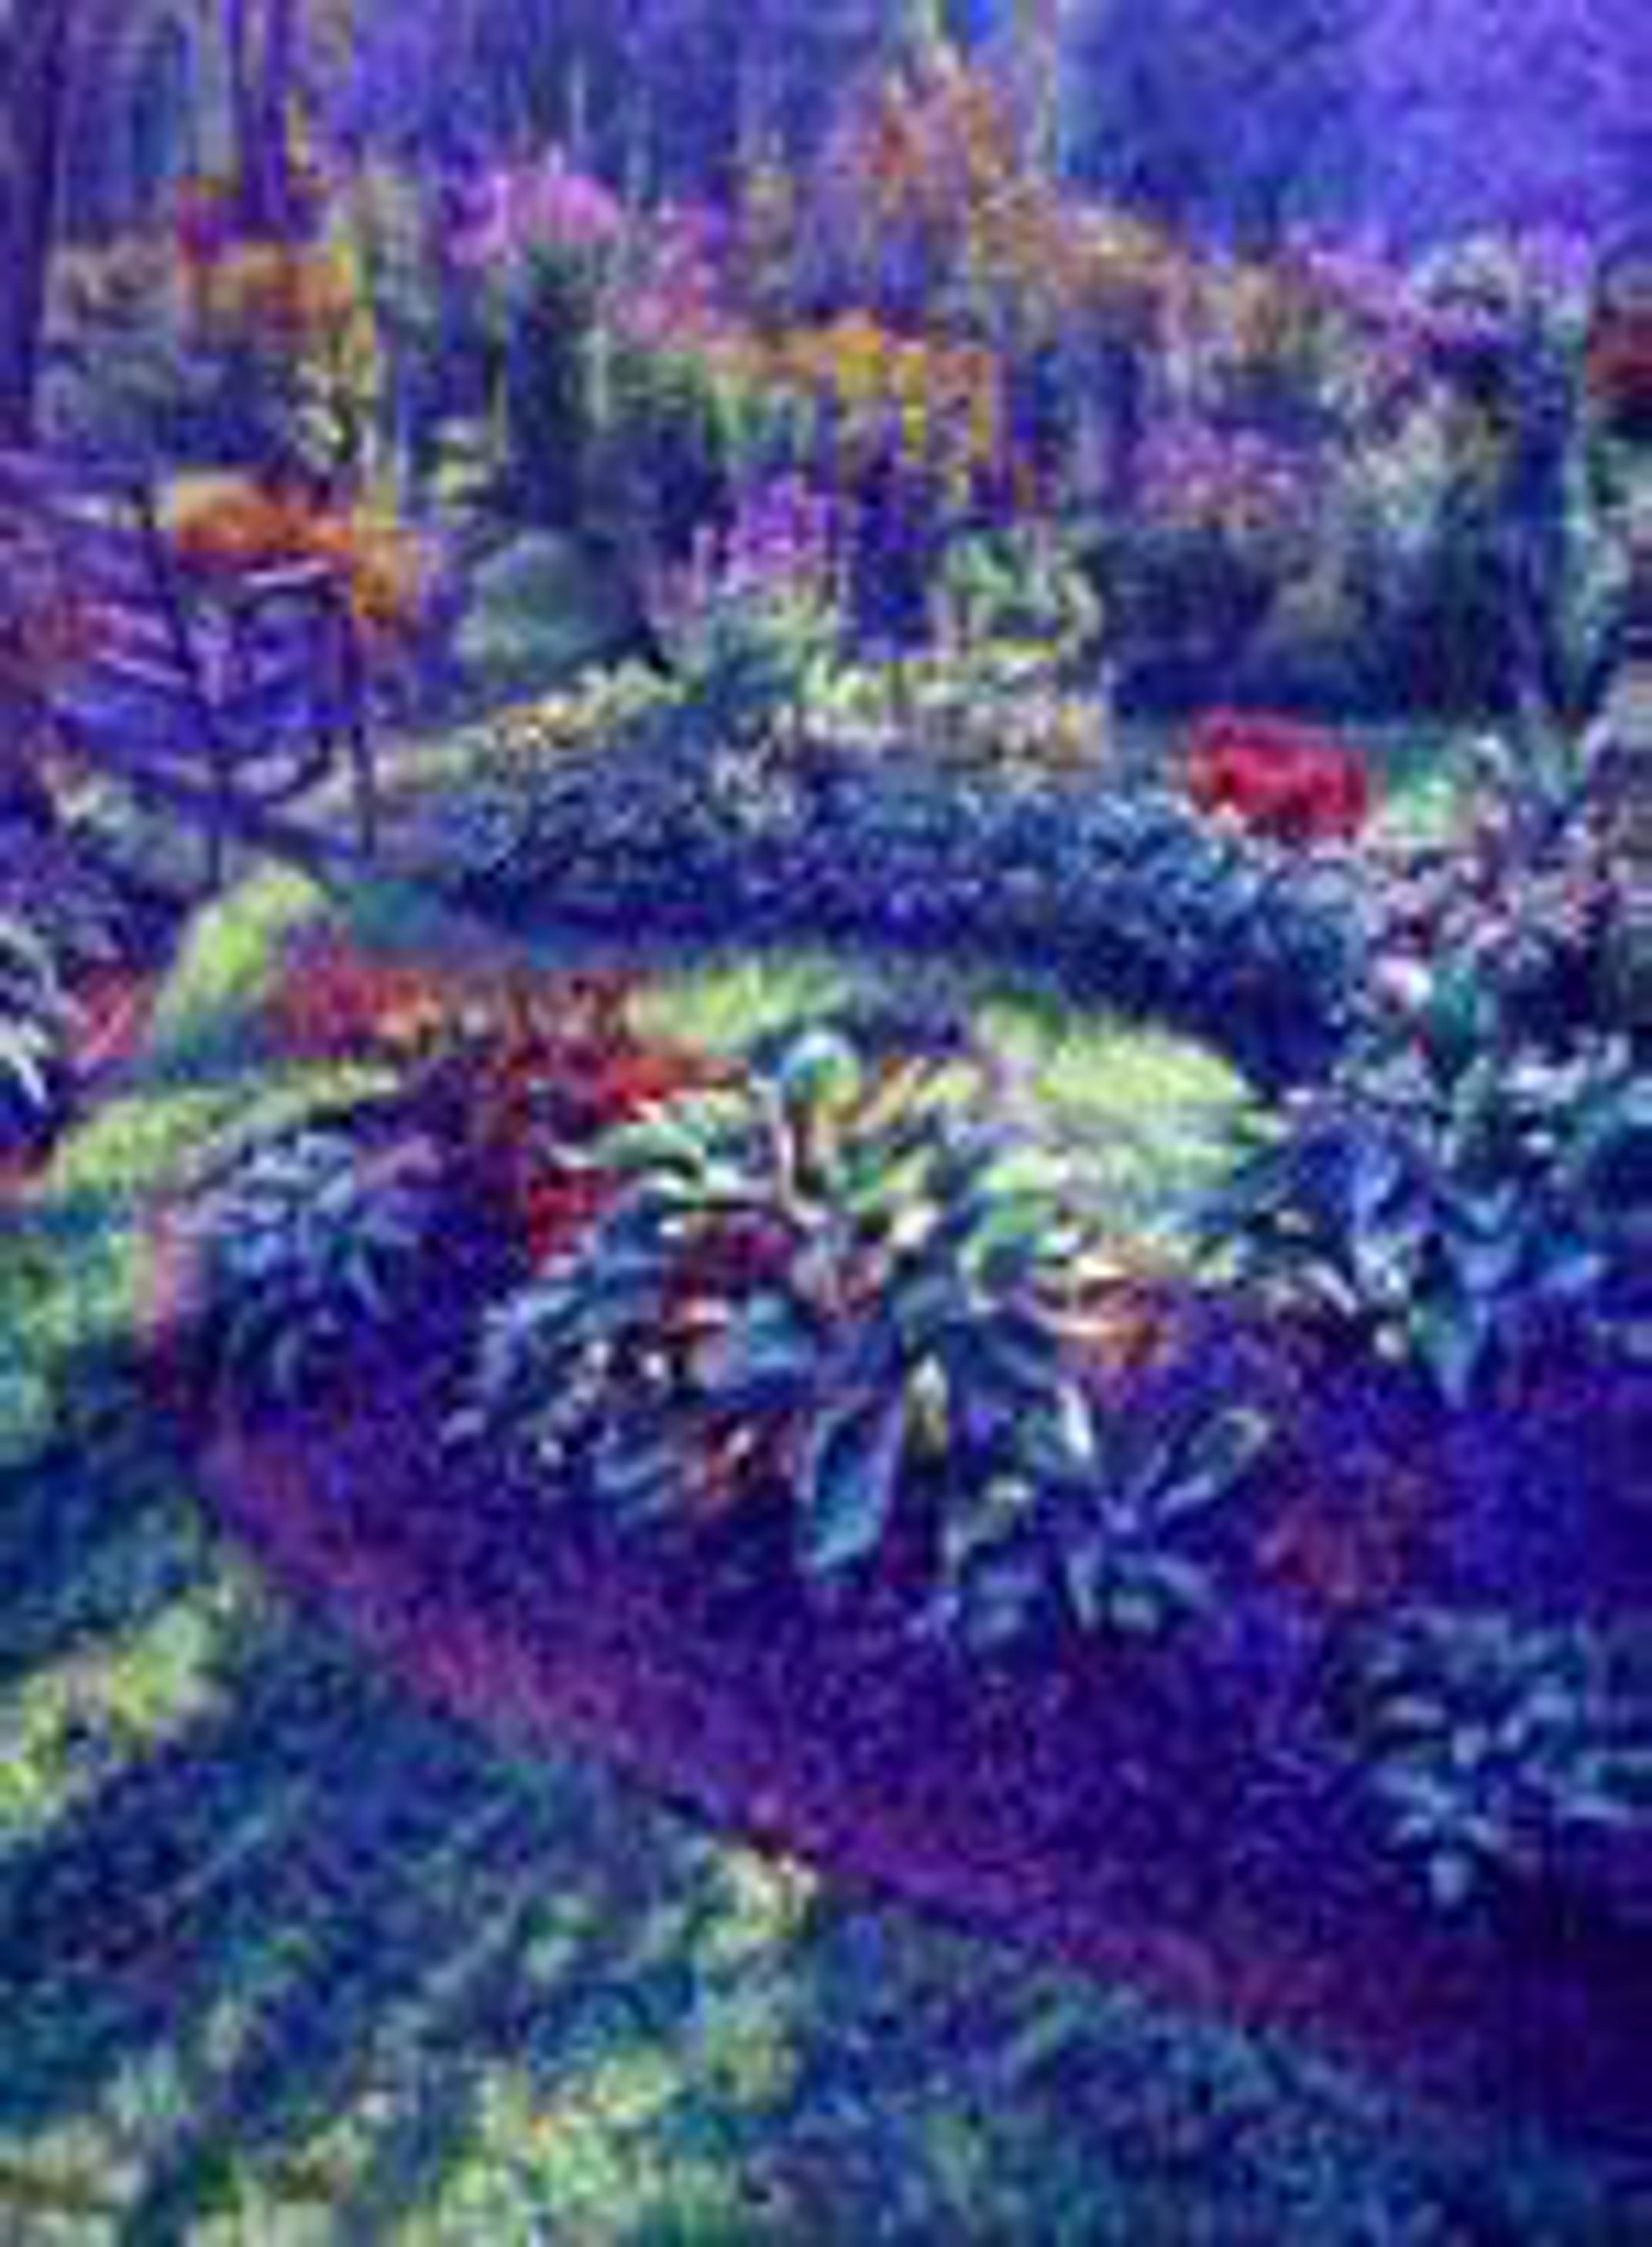 Artist's Garden SG-204 by Eddie Mitchell